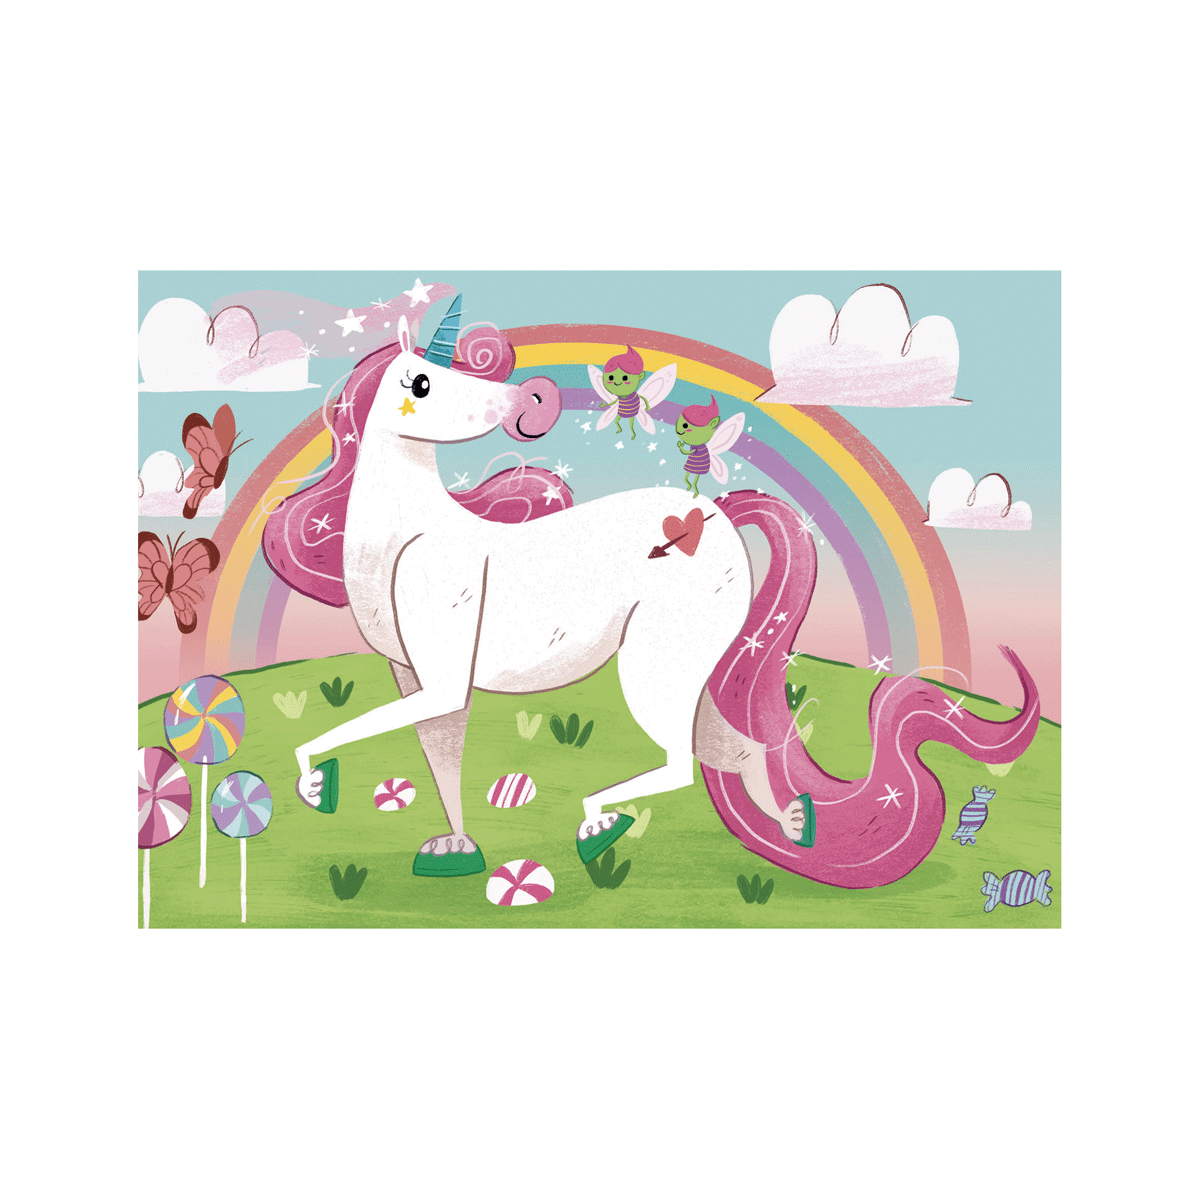 Clementoni supercolor puzzle  brilliant i believe in unicorns - 2x20 pezzi, puzzle bambini 3 anni - CLEMENTONI